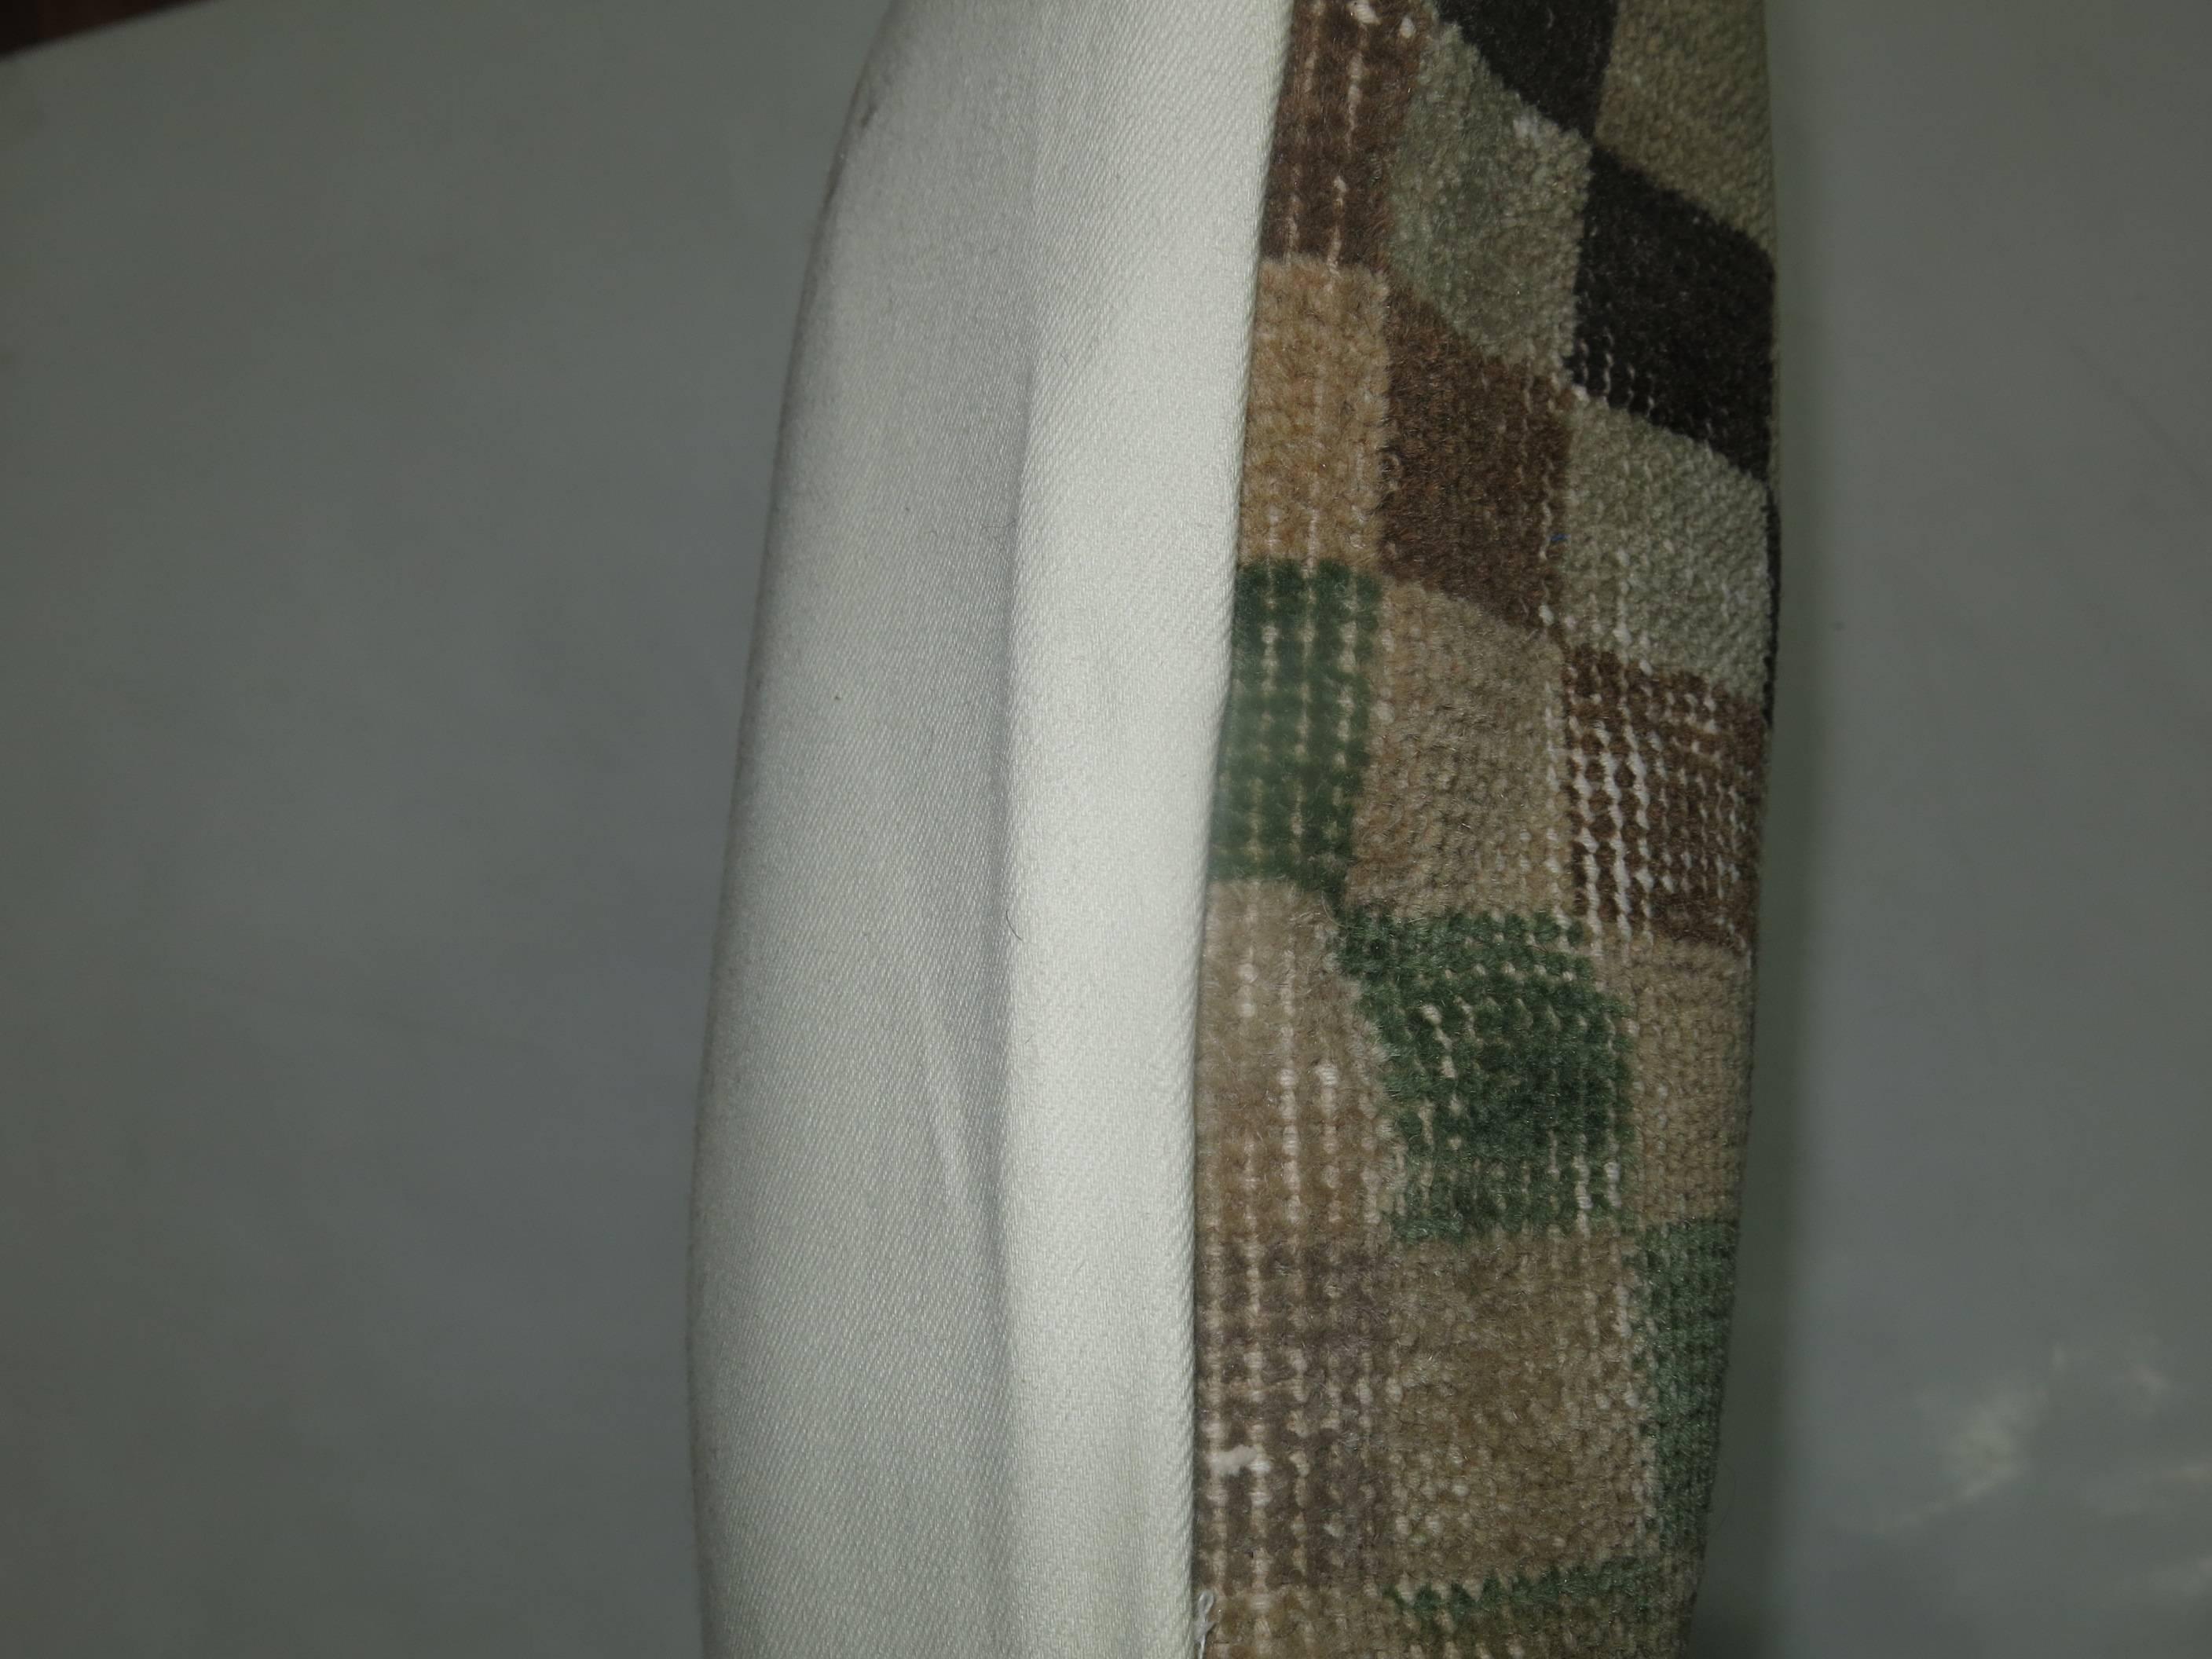 Grand coussin fabriqué à partir d'un tapis turc déco avec un dos en coton et une fermeture à glissière.

Mesures : 20